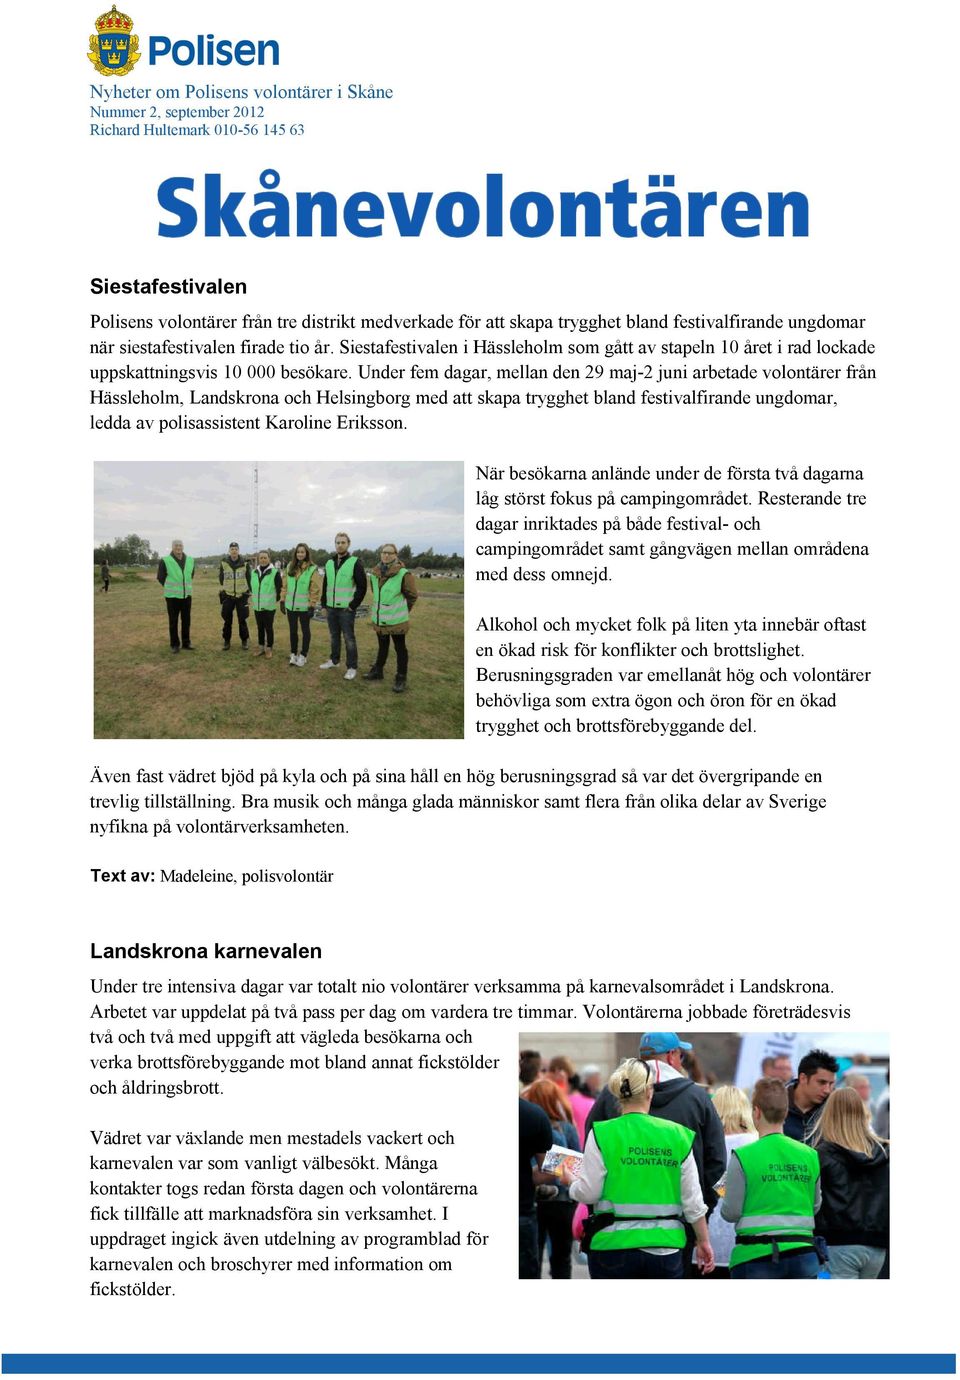 Under fem dagar, mellan den 29 maj-2 juni arbetade volontärer från Hässleholm, Landskrona och Helsingborg med att skapa trygghet bland festivalfirande ungdomar, ledda av polisassistent Karoline